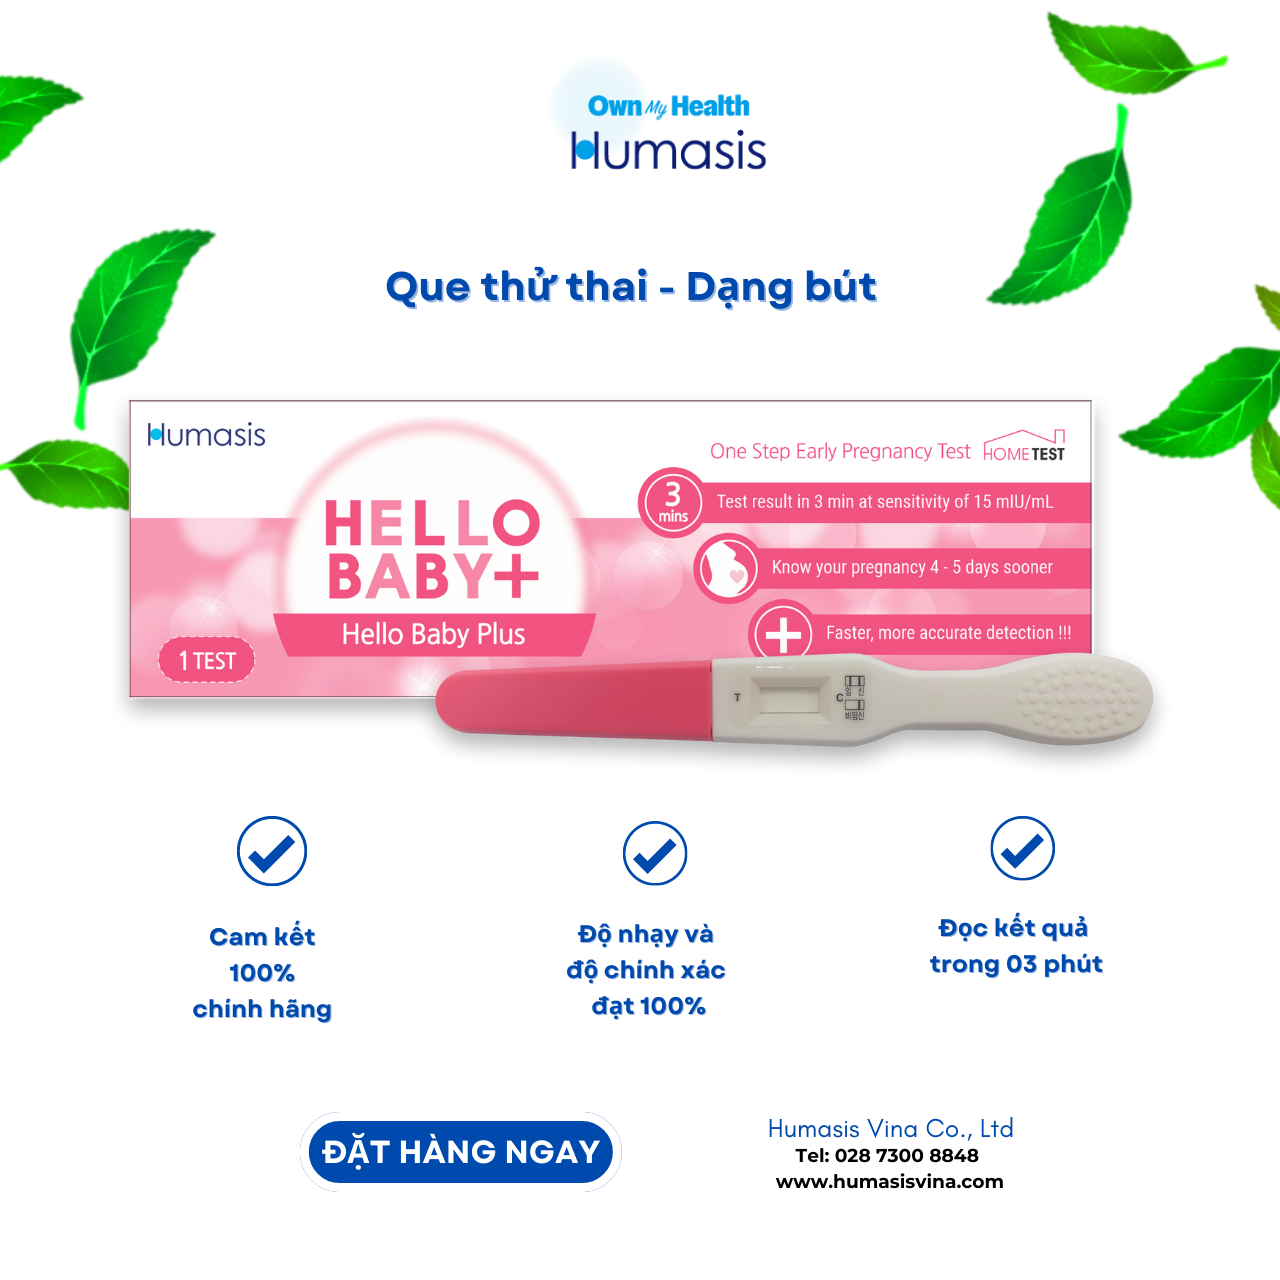 Que thử thai Humasis Hello Baby Plus - Dạng Bút - Phát hiện mang thai sớm